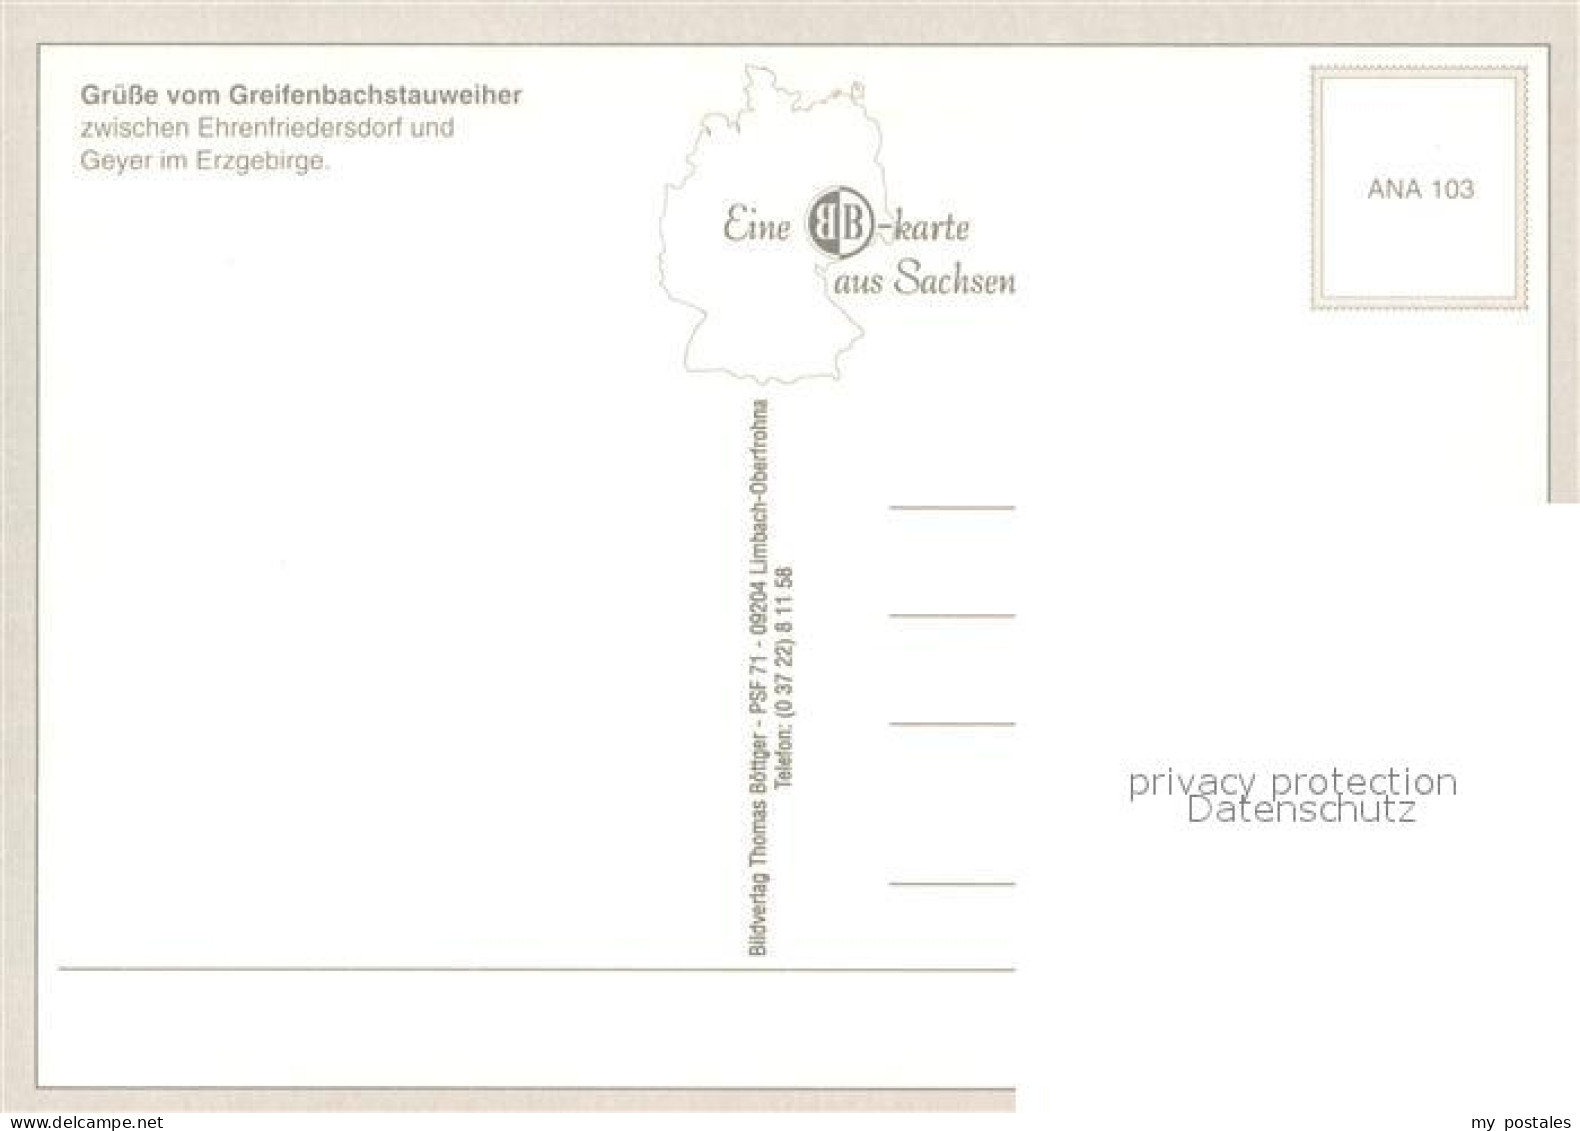 73732991 Ehrenfriedersdorf Erzgebirge Greifenbachstauweiher Badestrand Rutschbah - Ehrenfriedersdorf